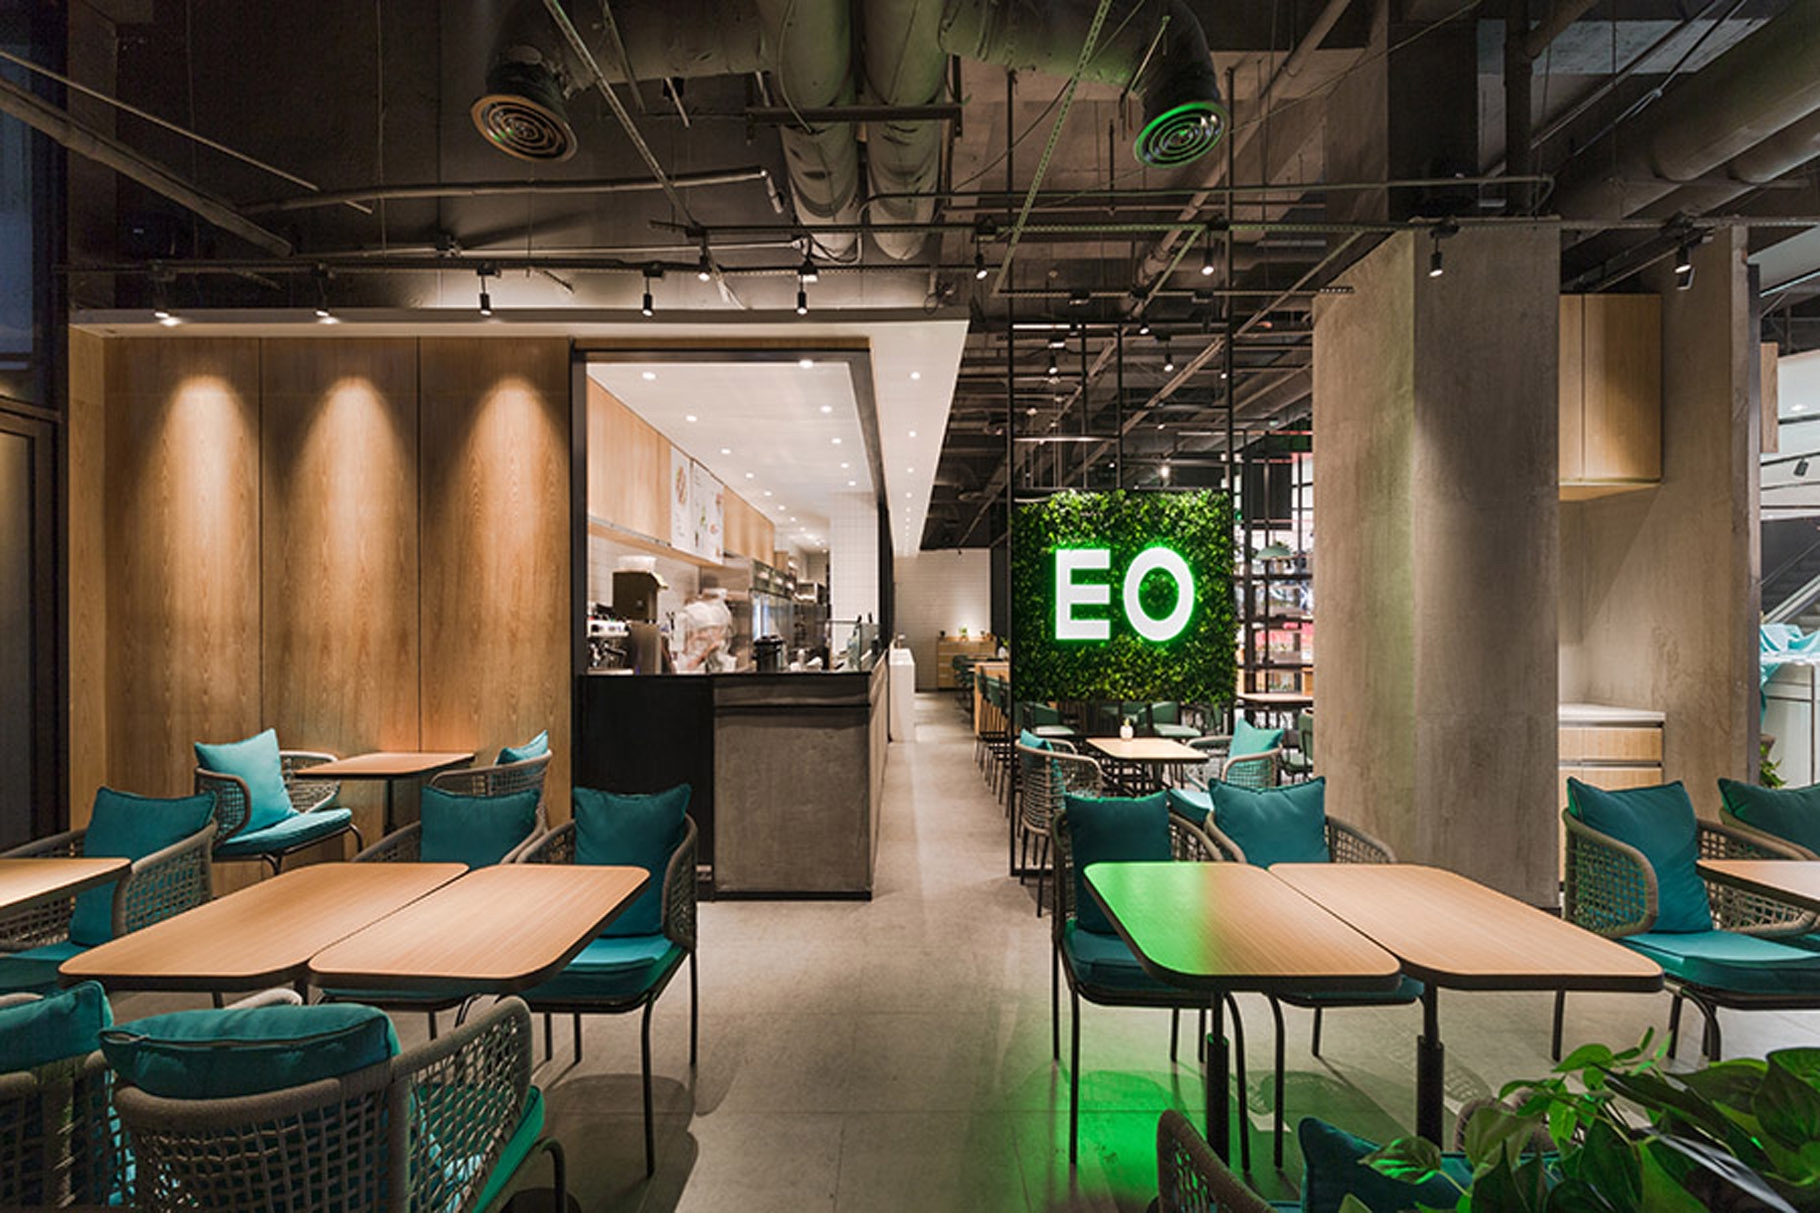 Eo蔬果料理餐饮空间设计与健康主题餐厅 包装设计公司 深圳vi设计 广州北京上海标志logo品牌包装设计